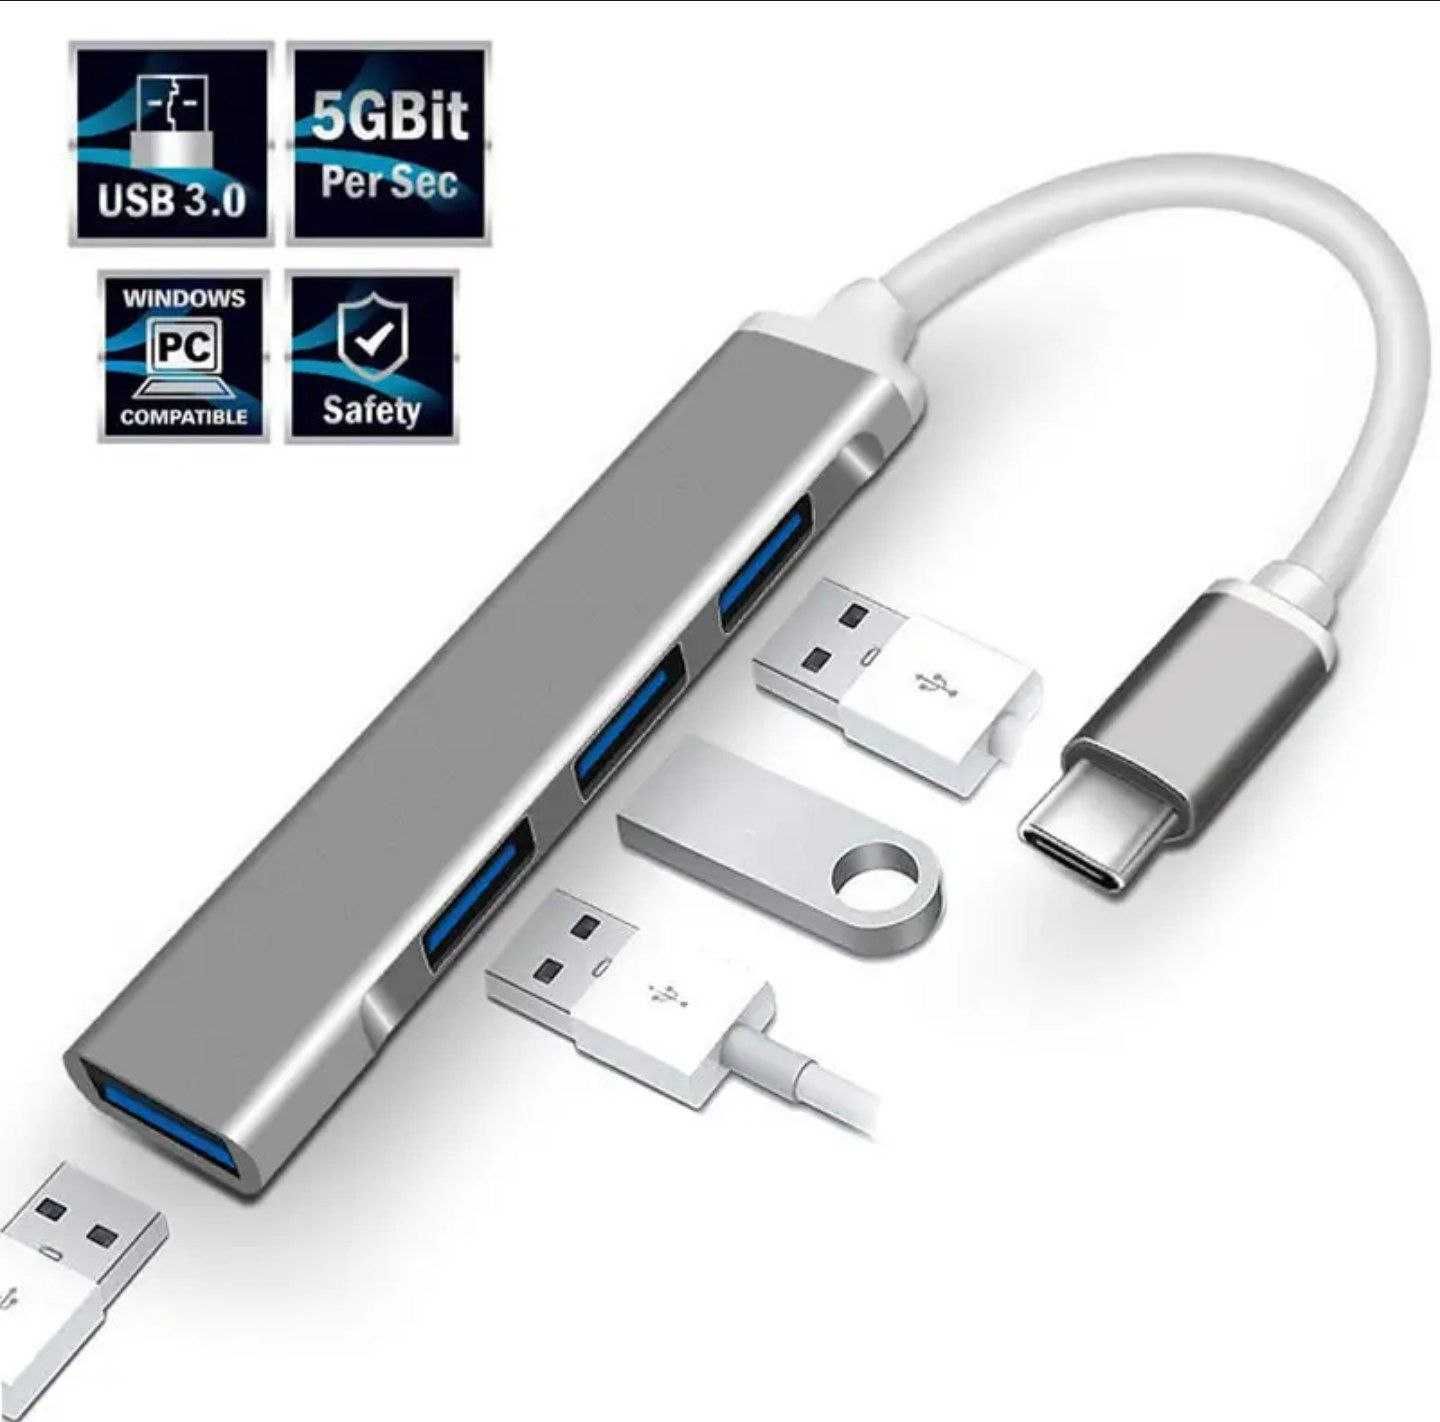 НОВЫЙ USB 3.0 hub юсб хаб переходник type-C на USB